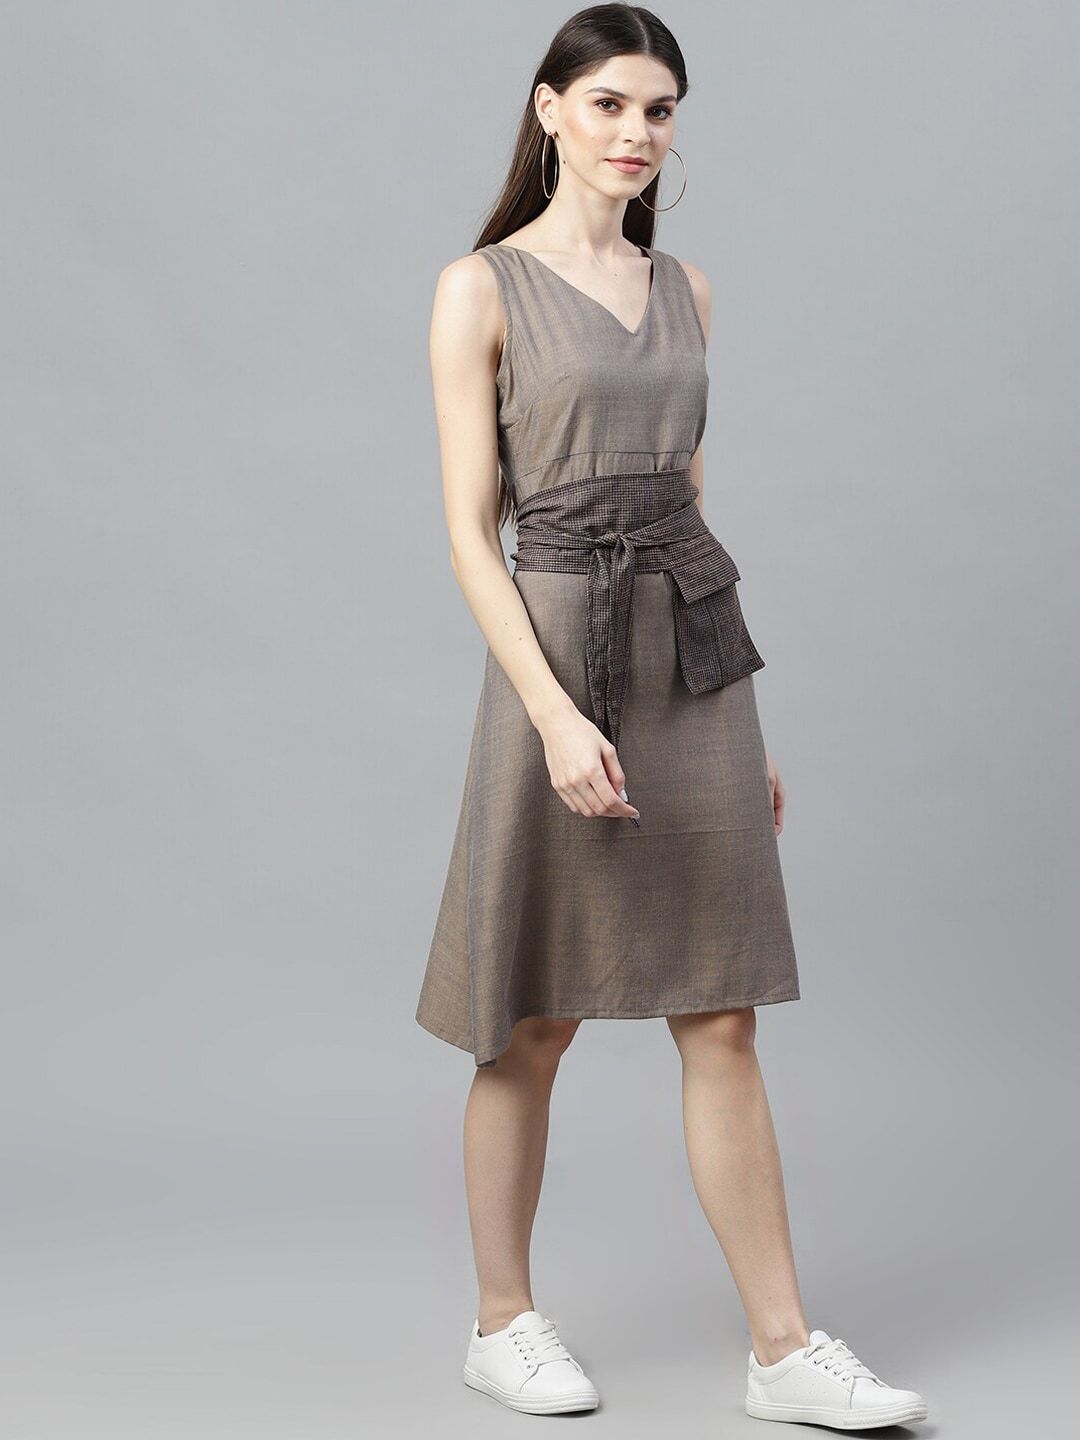 Women's  Grey Solid A-Line Dress - AKS